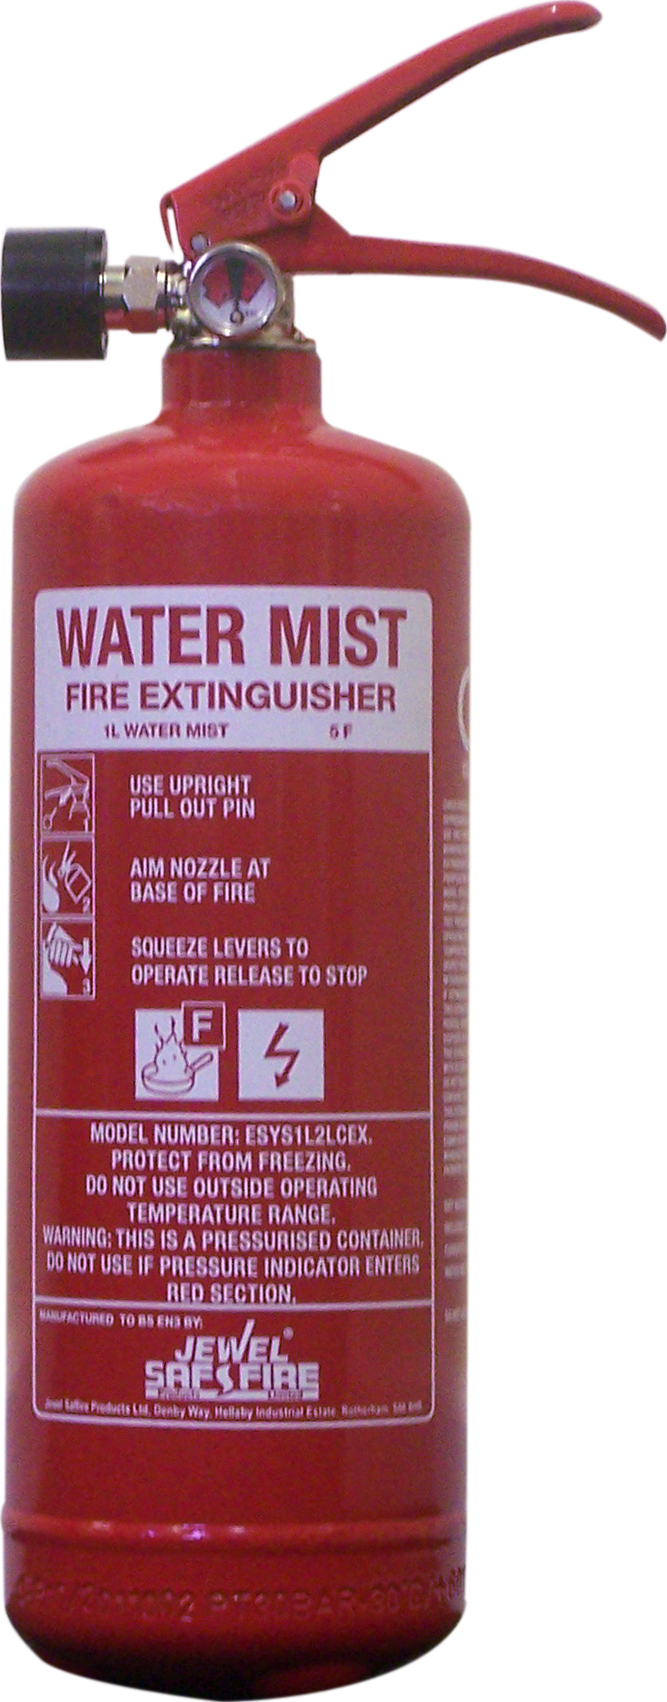 1 L Water Mist